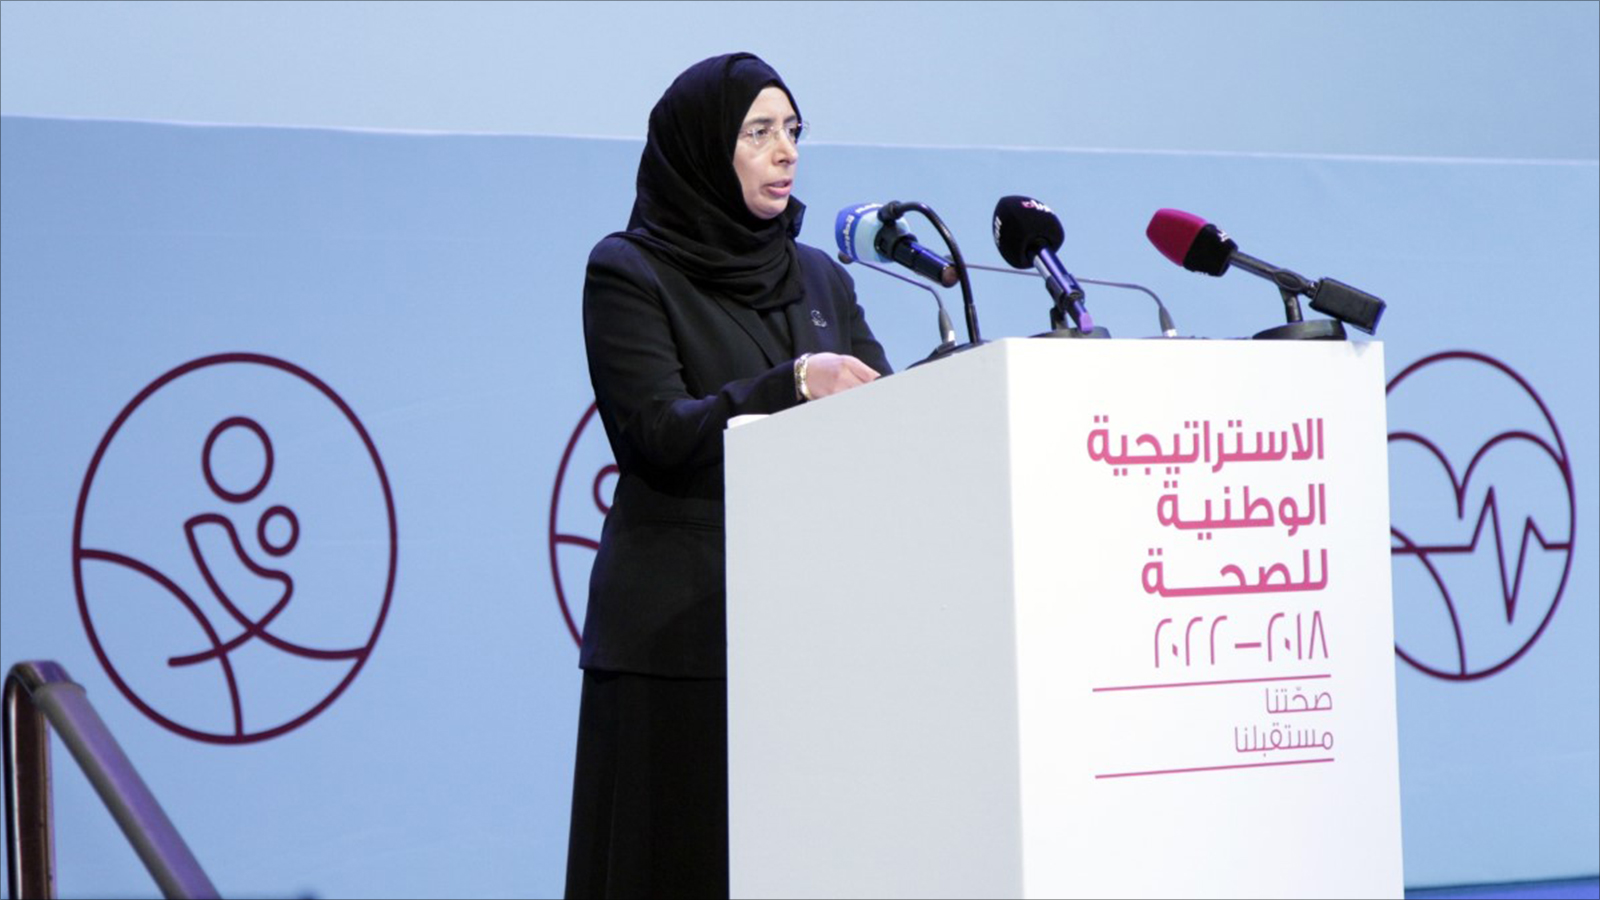 ‪وزيرة الصحة القطرية حنان الكواري: قطر حققت تقدما هائلا في تحسين جودة الرعاية الصحية‬ (الجزيرة)